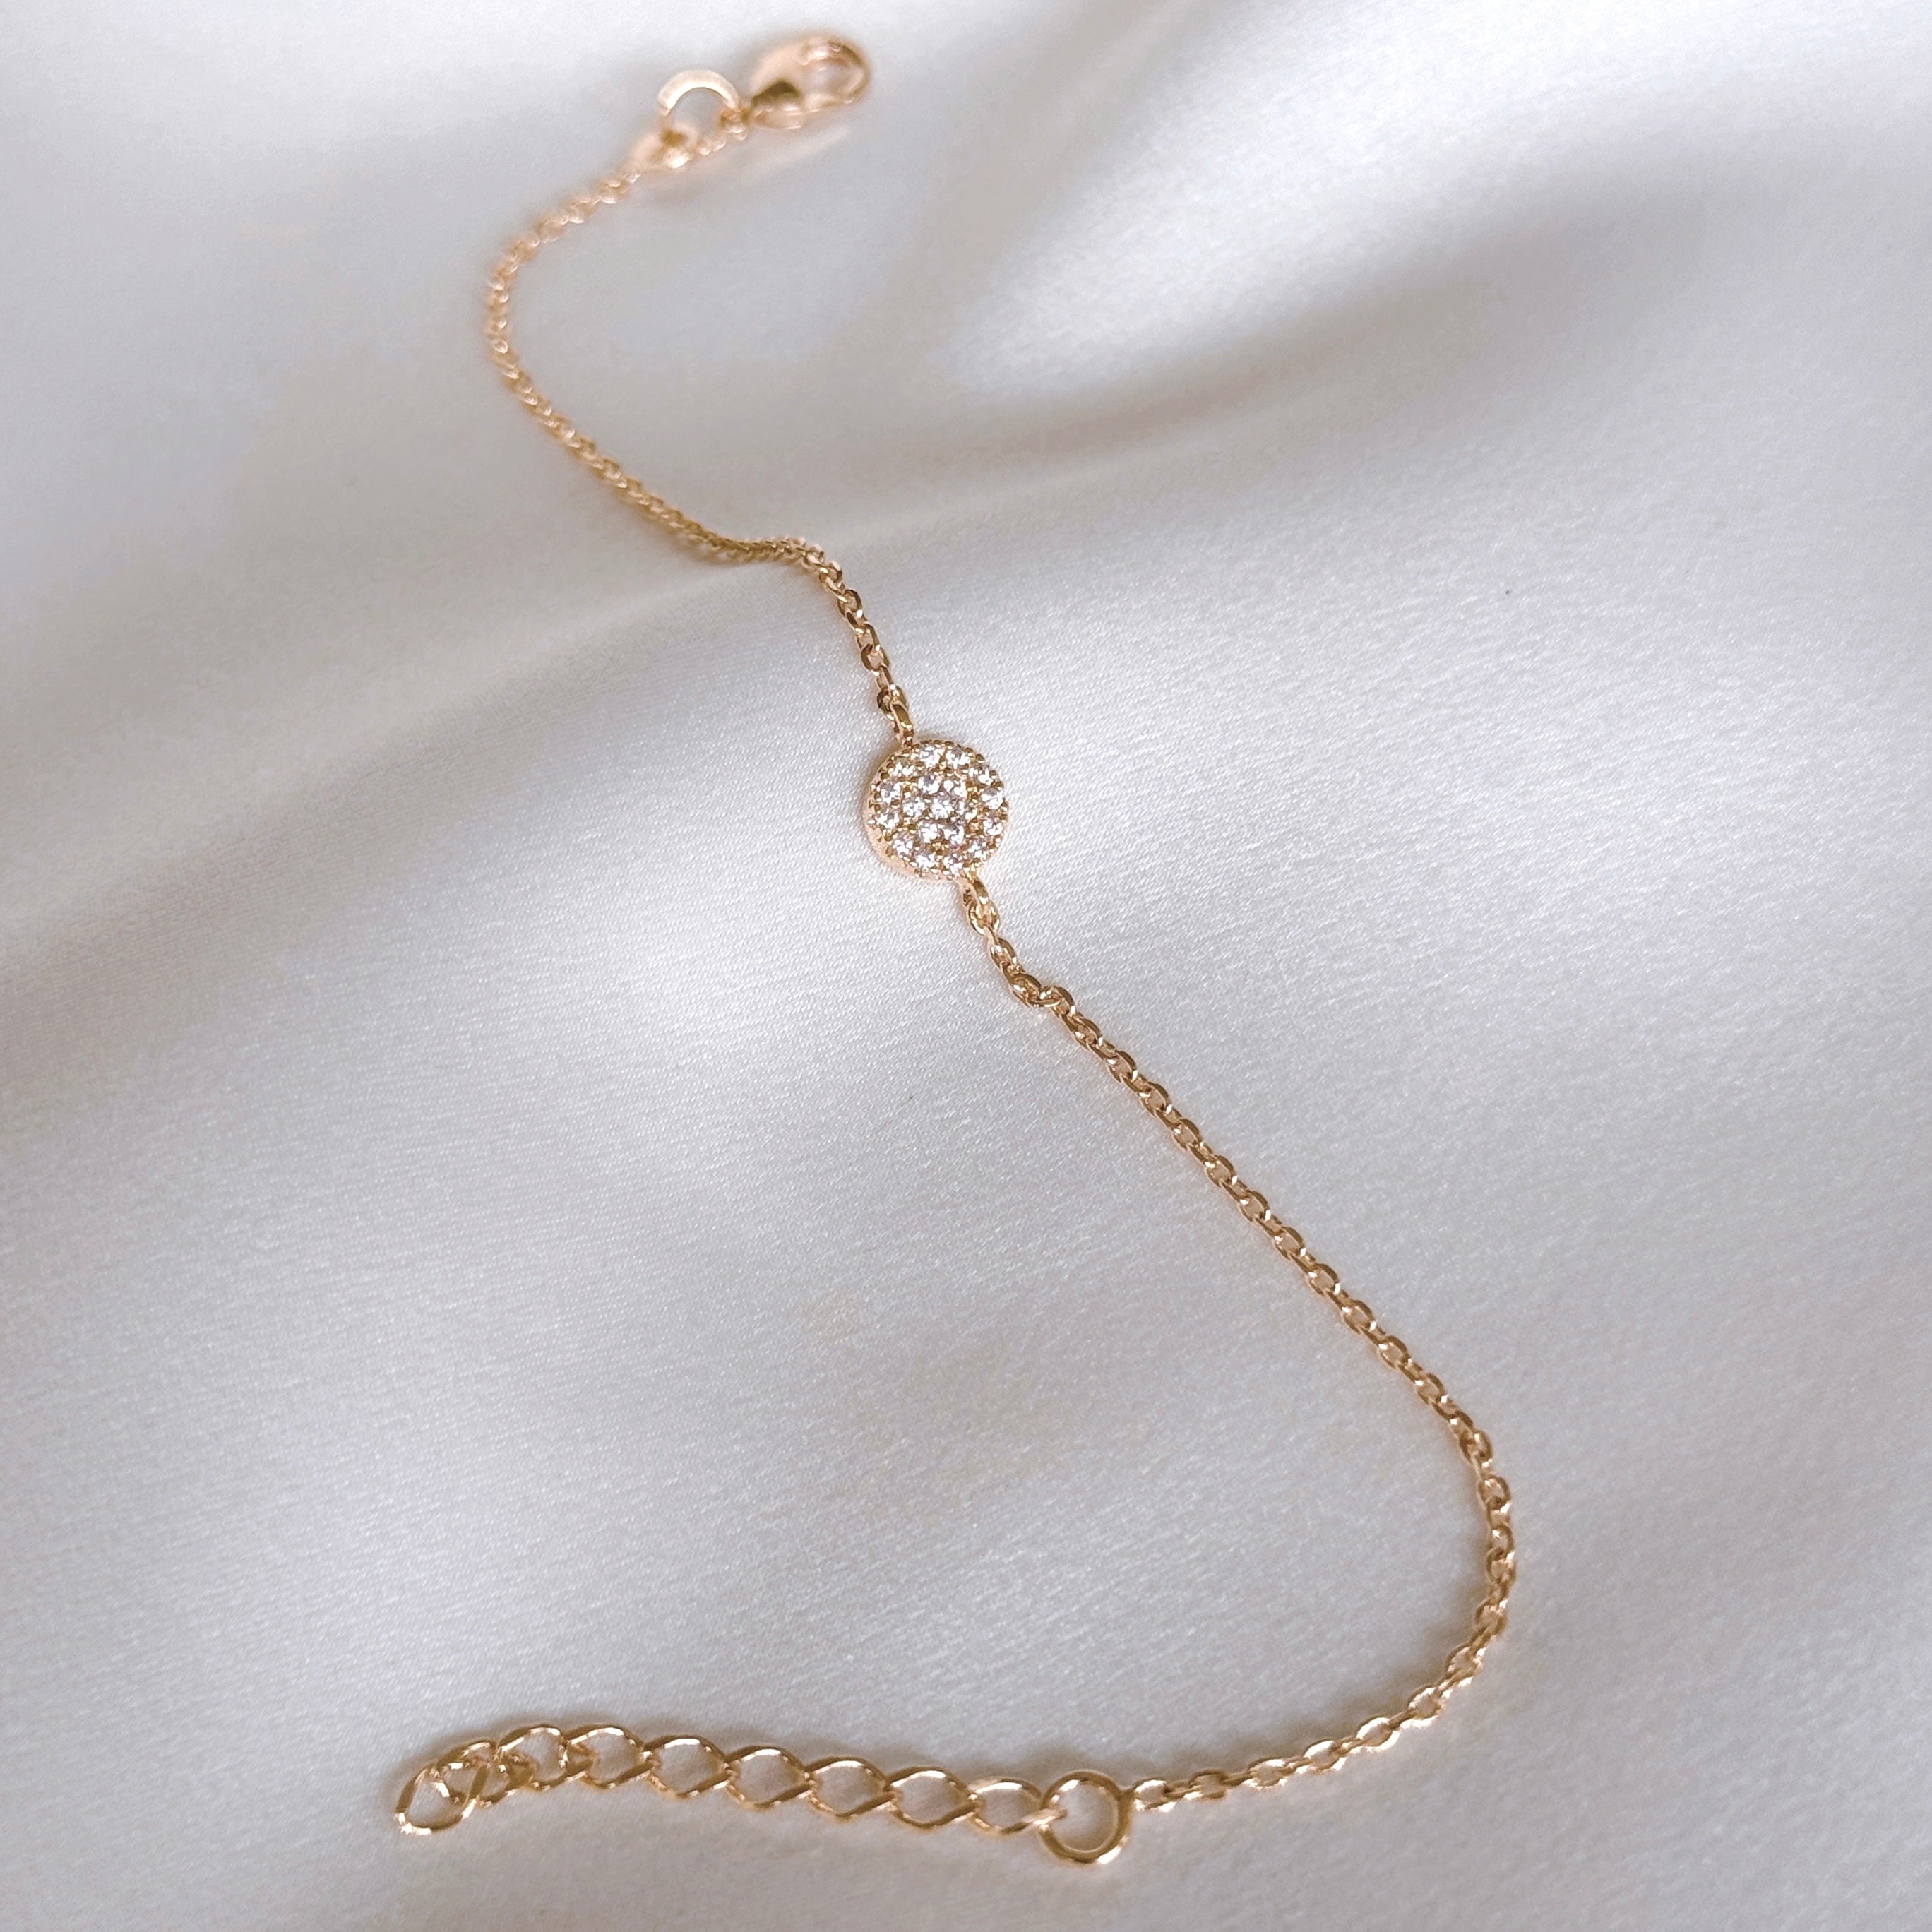 Gold-plated “Crimped Pastille” bracelet